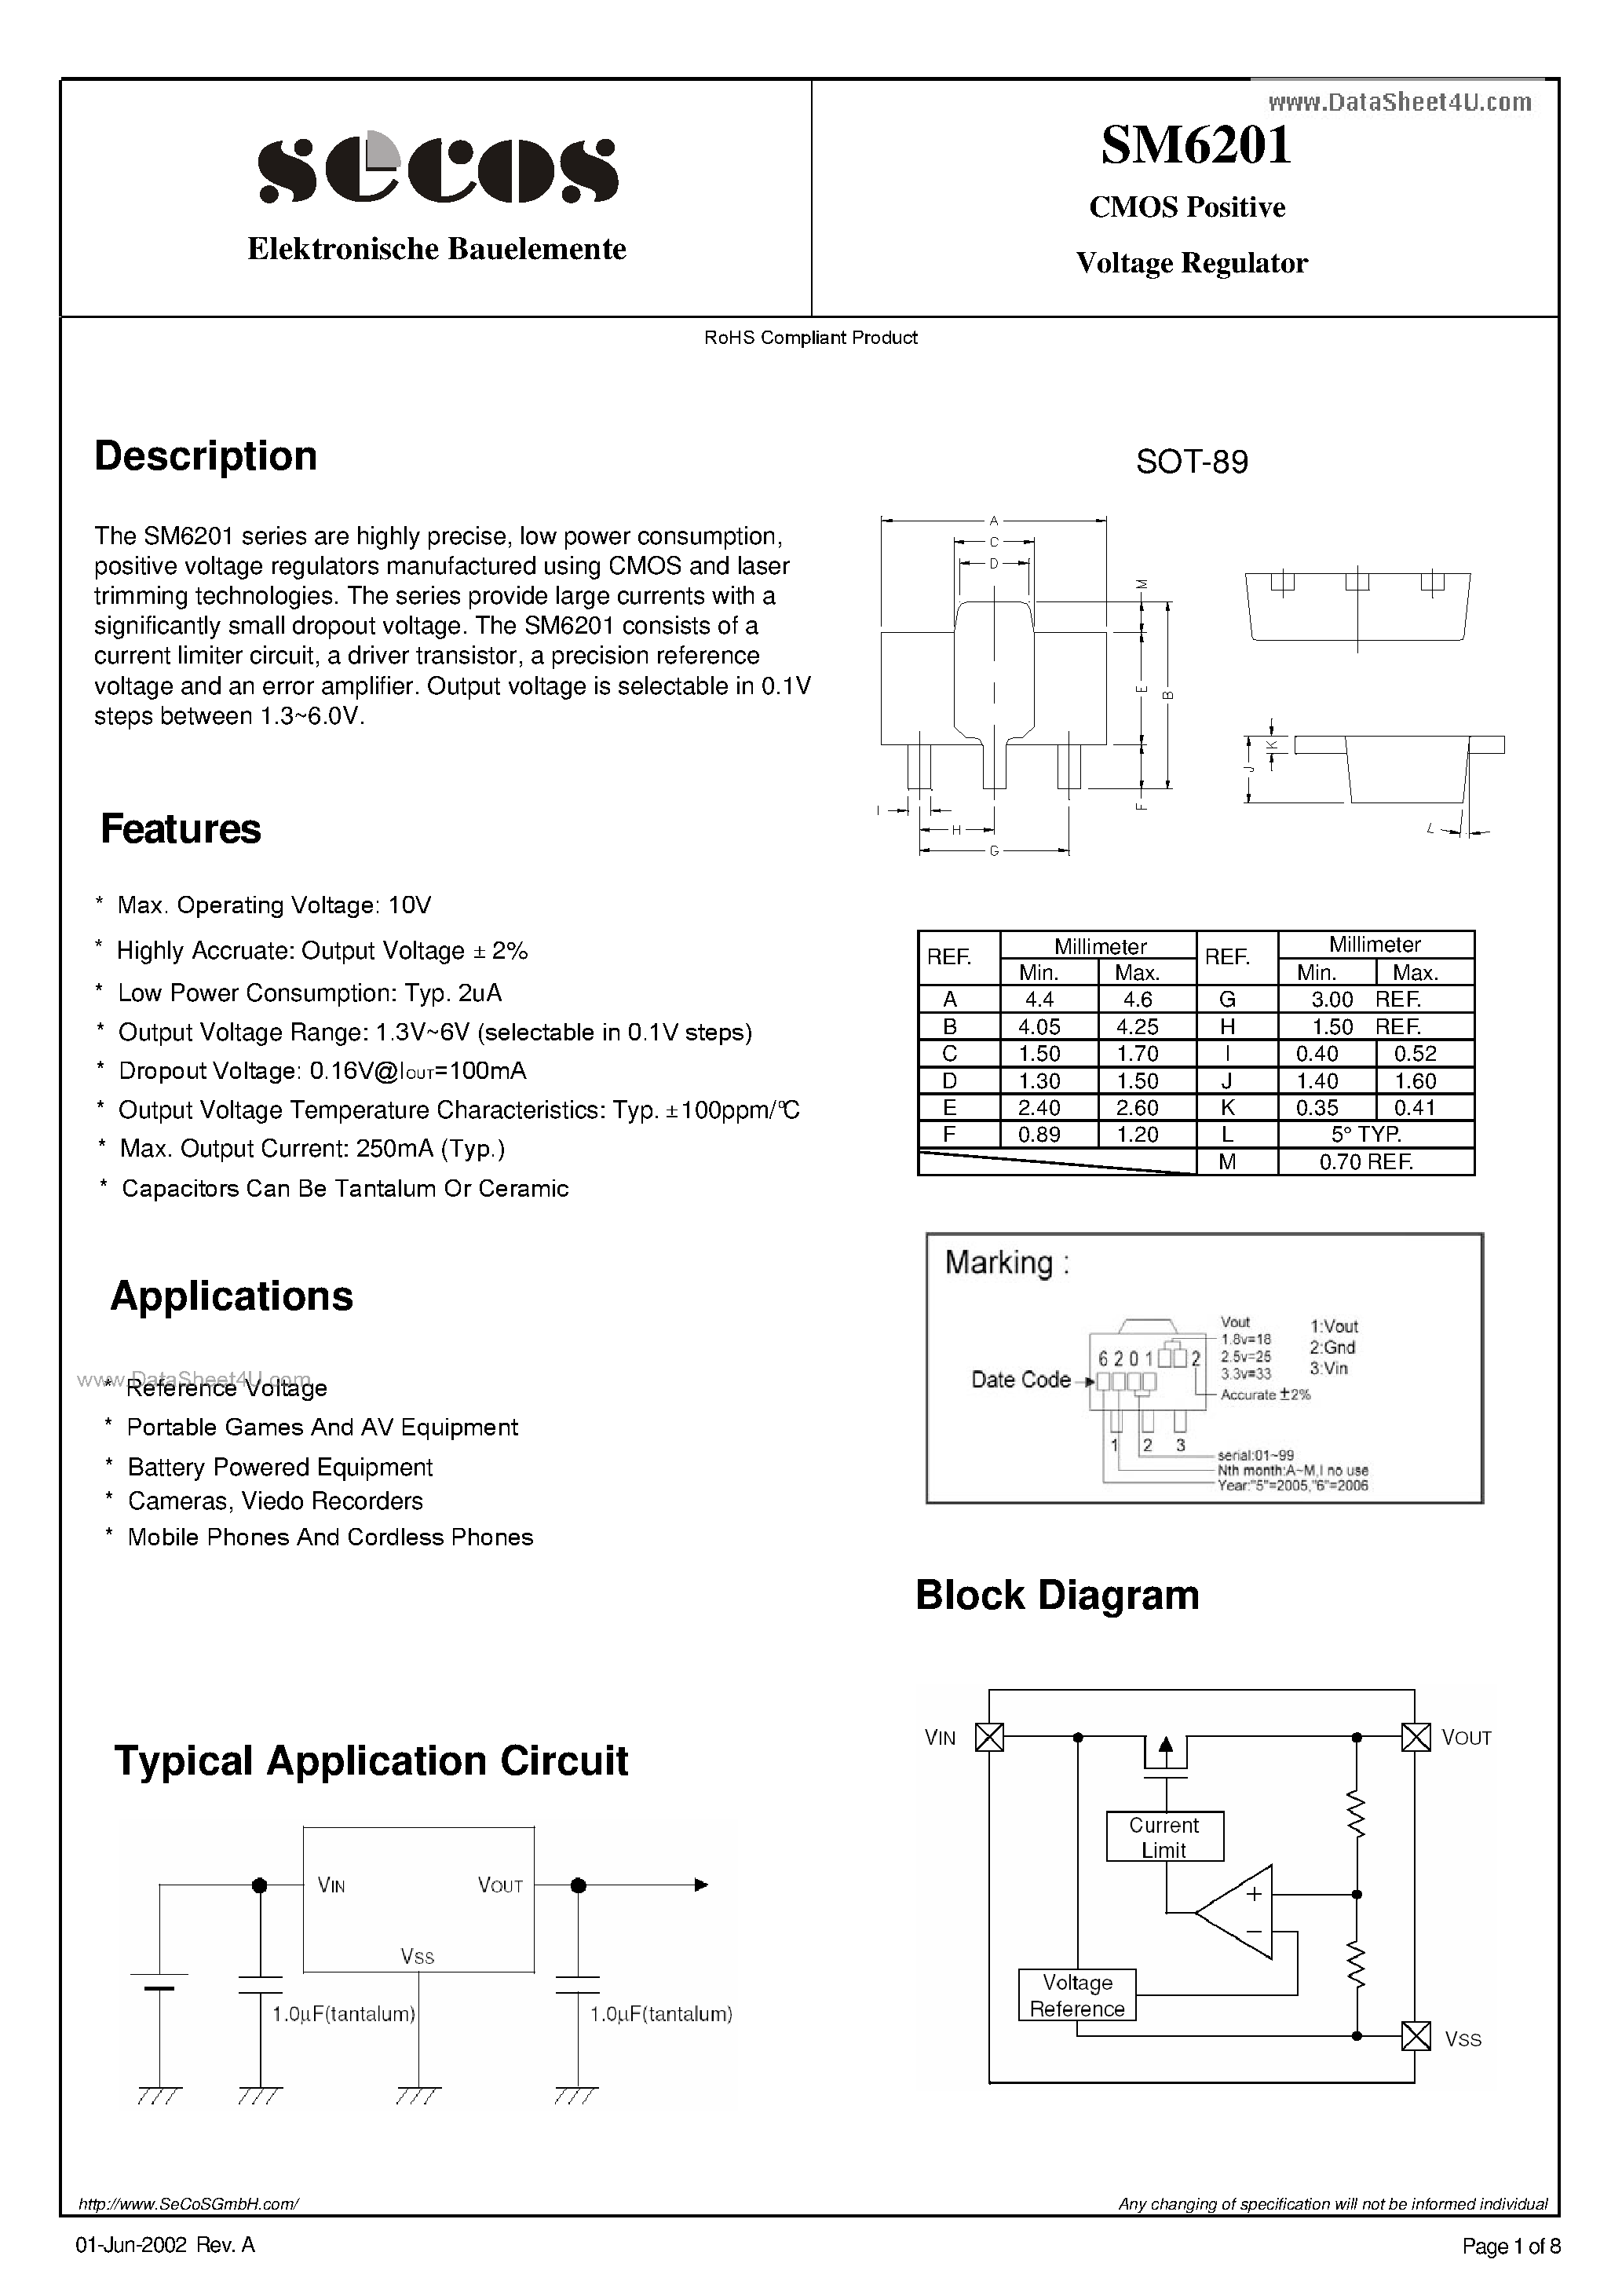 Даташит SM6201 - Voltage Regulator страница 1